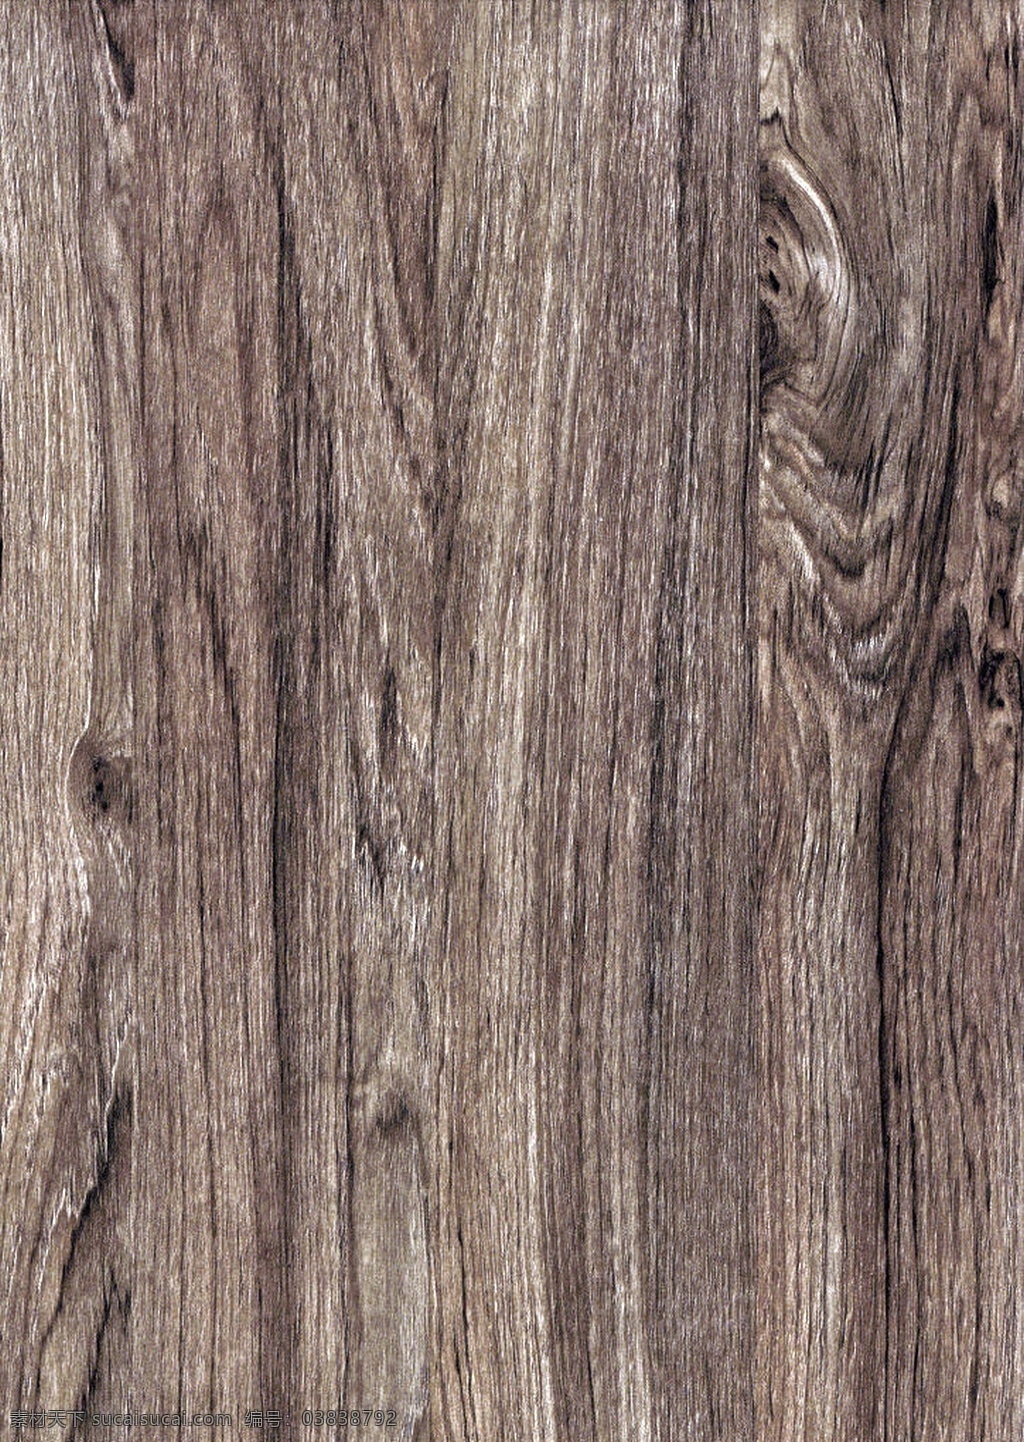 装修 效果图 木纹 后期 贴图 地板 木头 材质 室内效果图 实木 3d贴图 3d材质 效果图素材 效果图后期 装潢